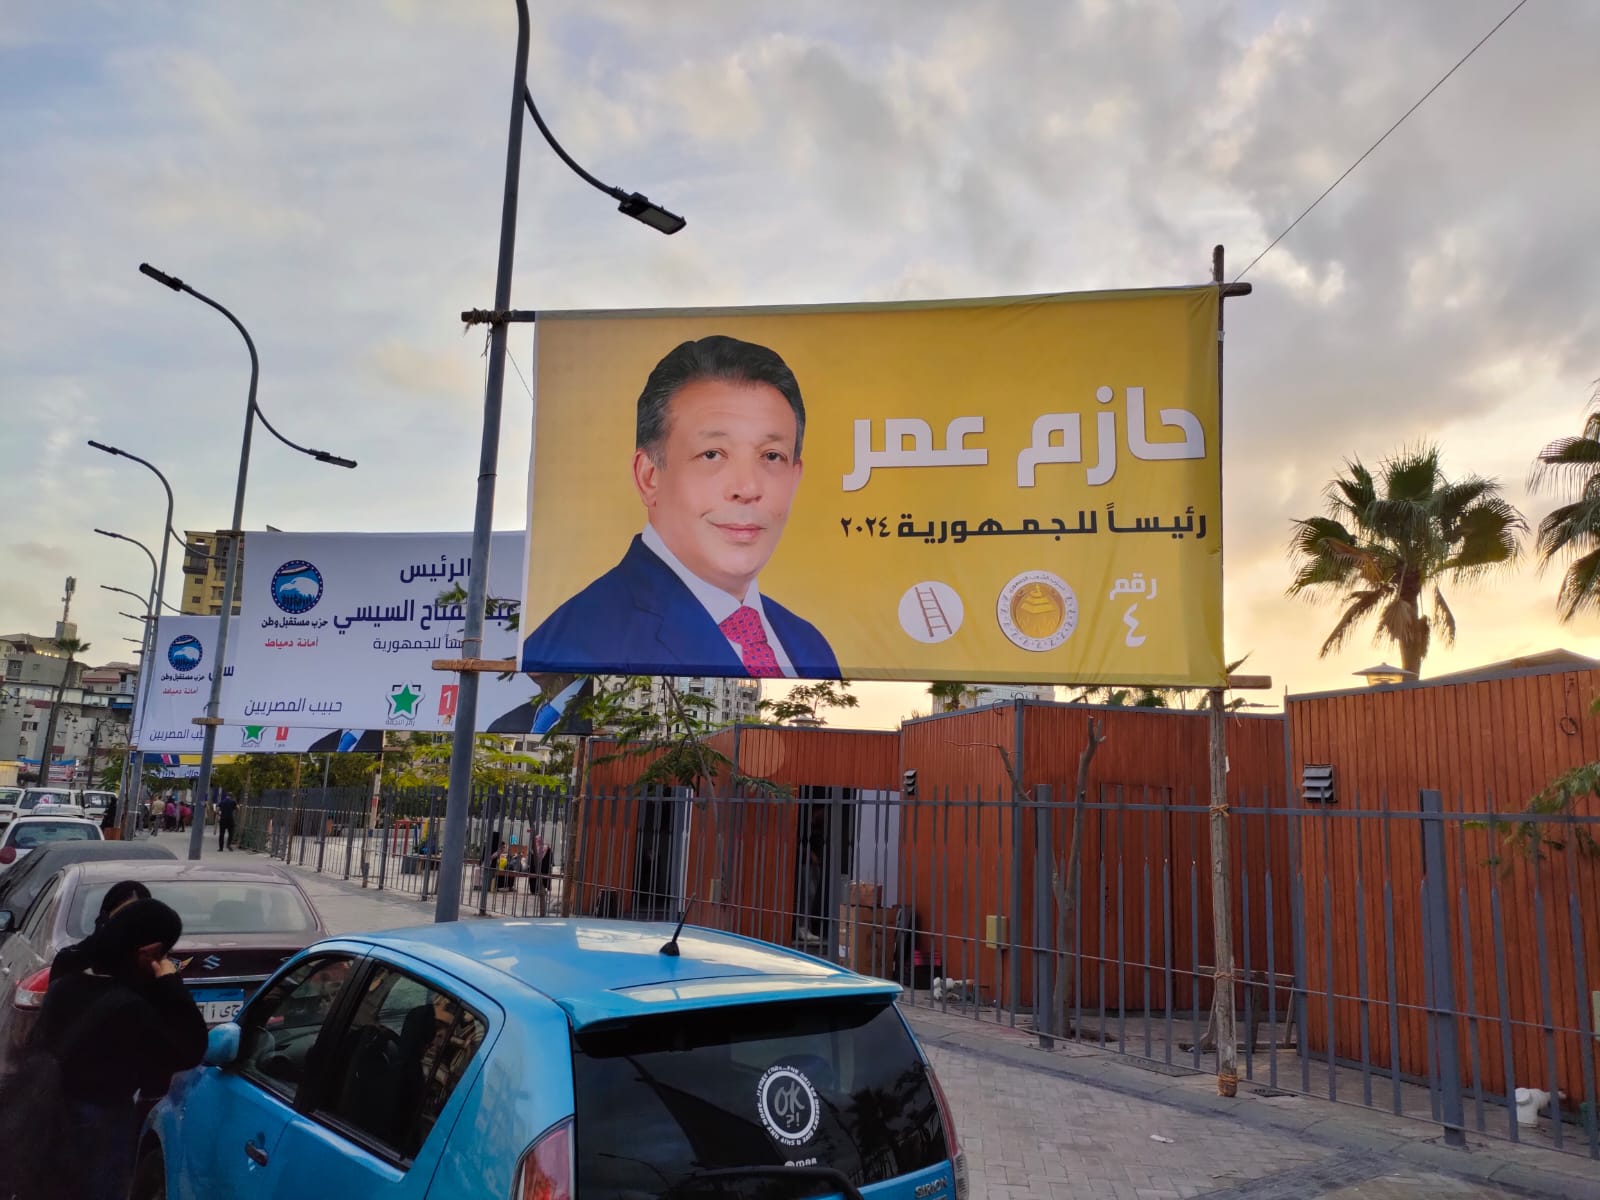 صور المرشح الرئاسي حازم عمر (17)